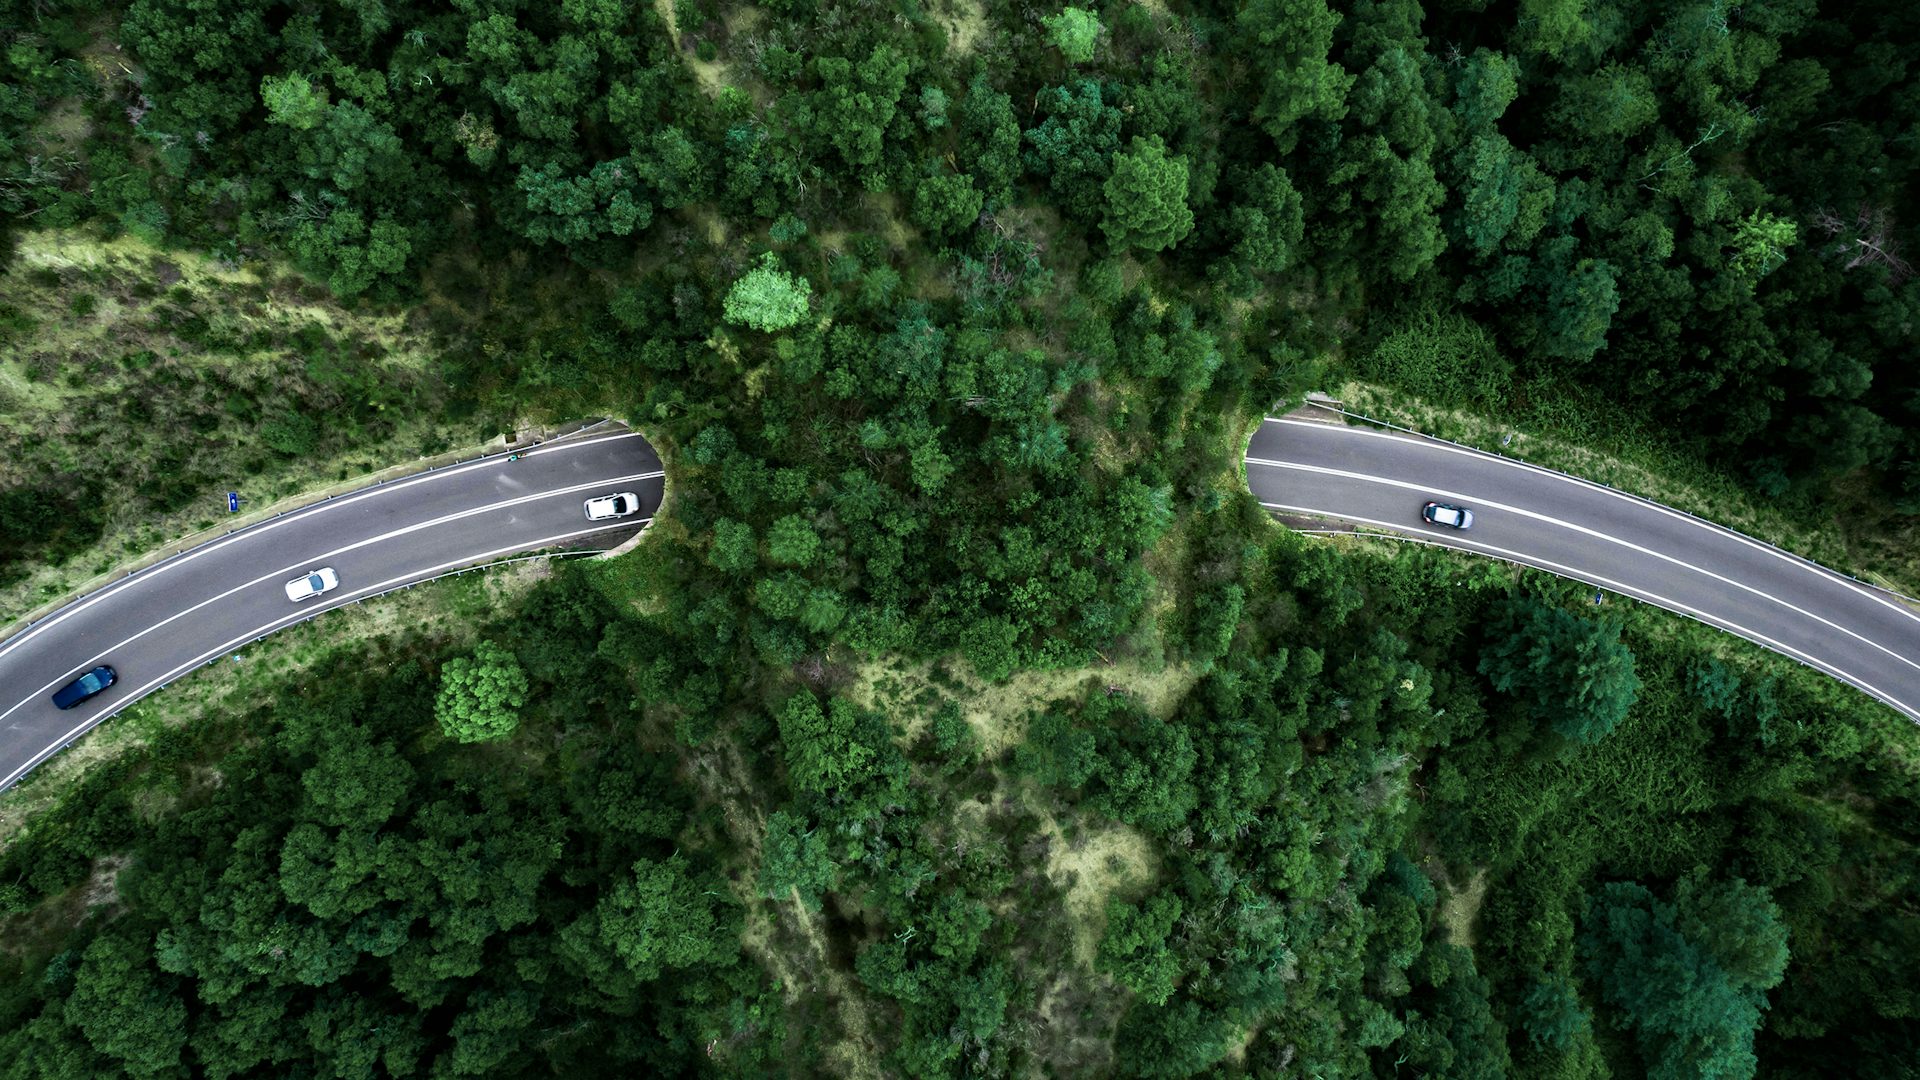 Vue aérienne d'une route serpentant à travers un paysage verdoyant.